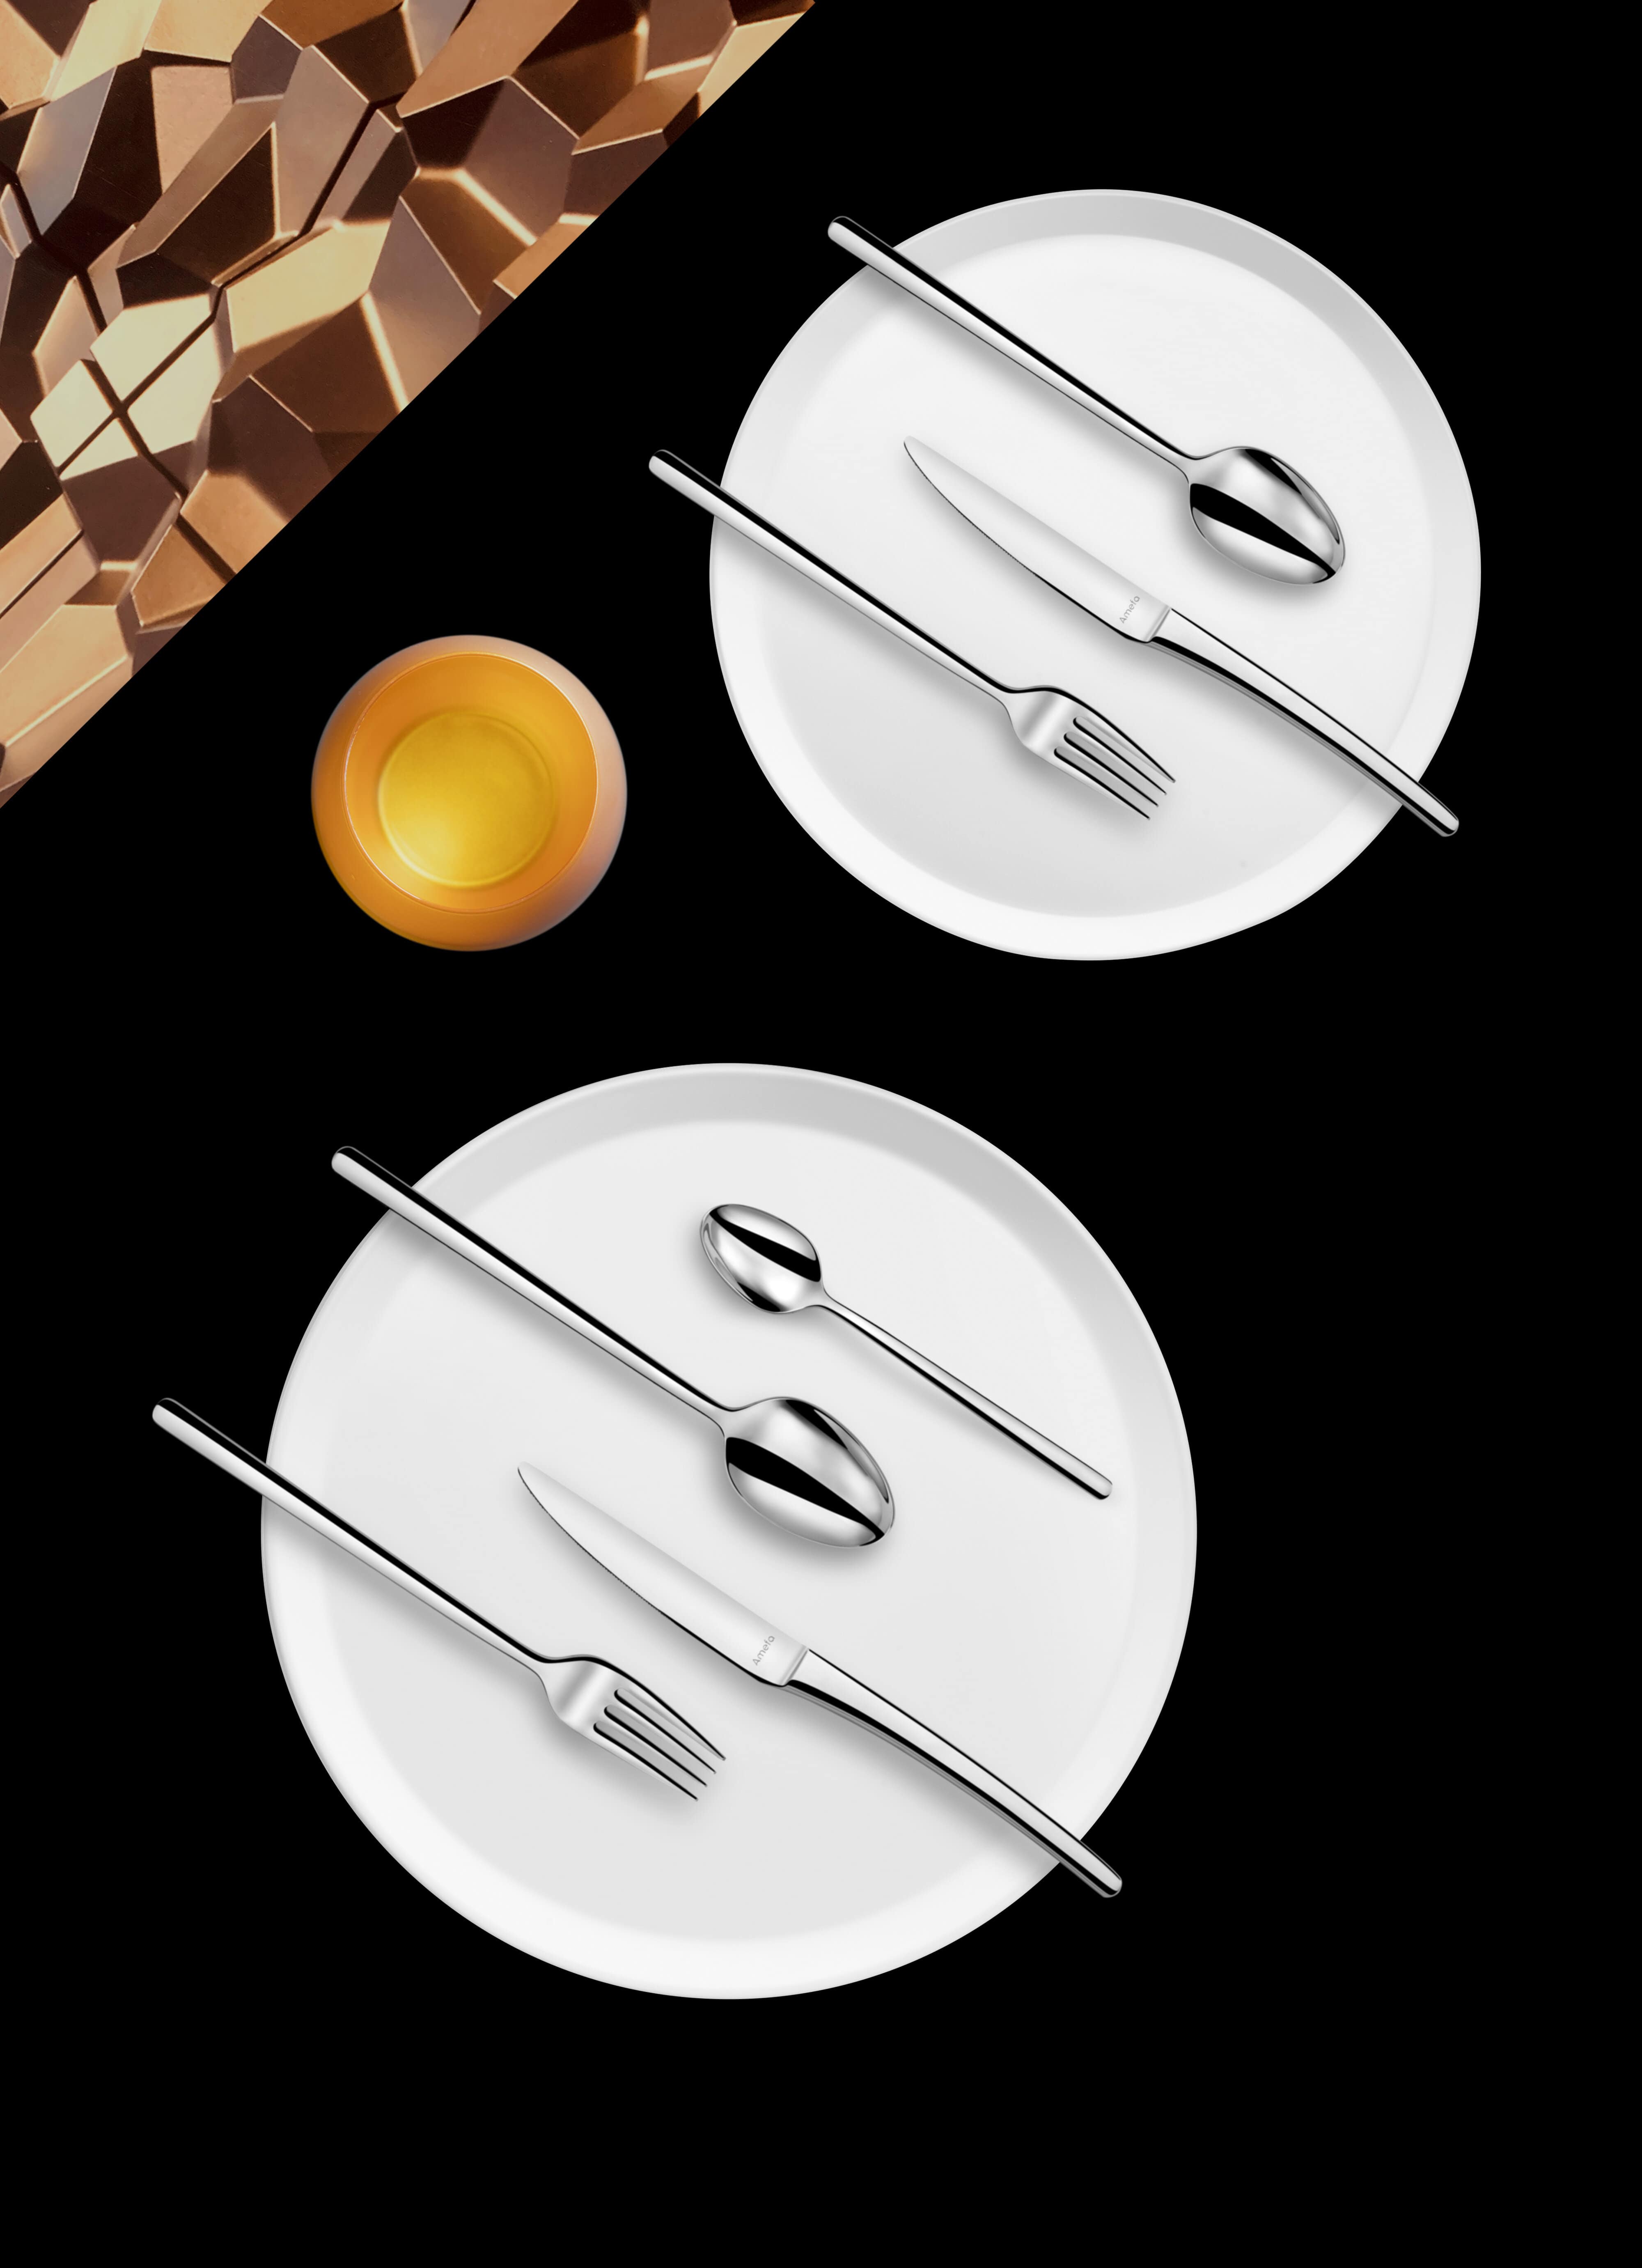 Deux assiettes plates en porcelaine blanche et deux sets de couverts de la marque Amefa.